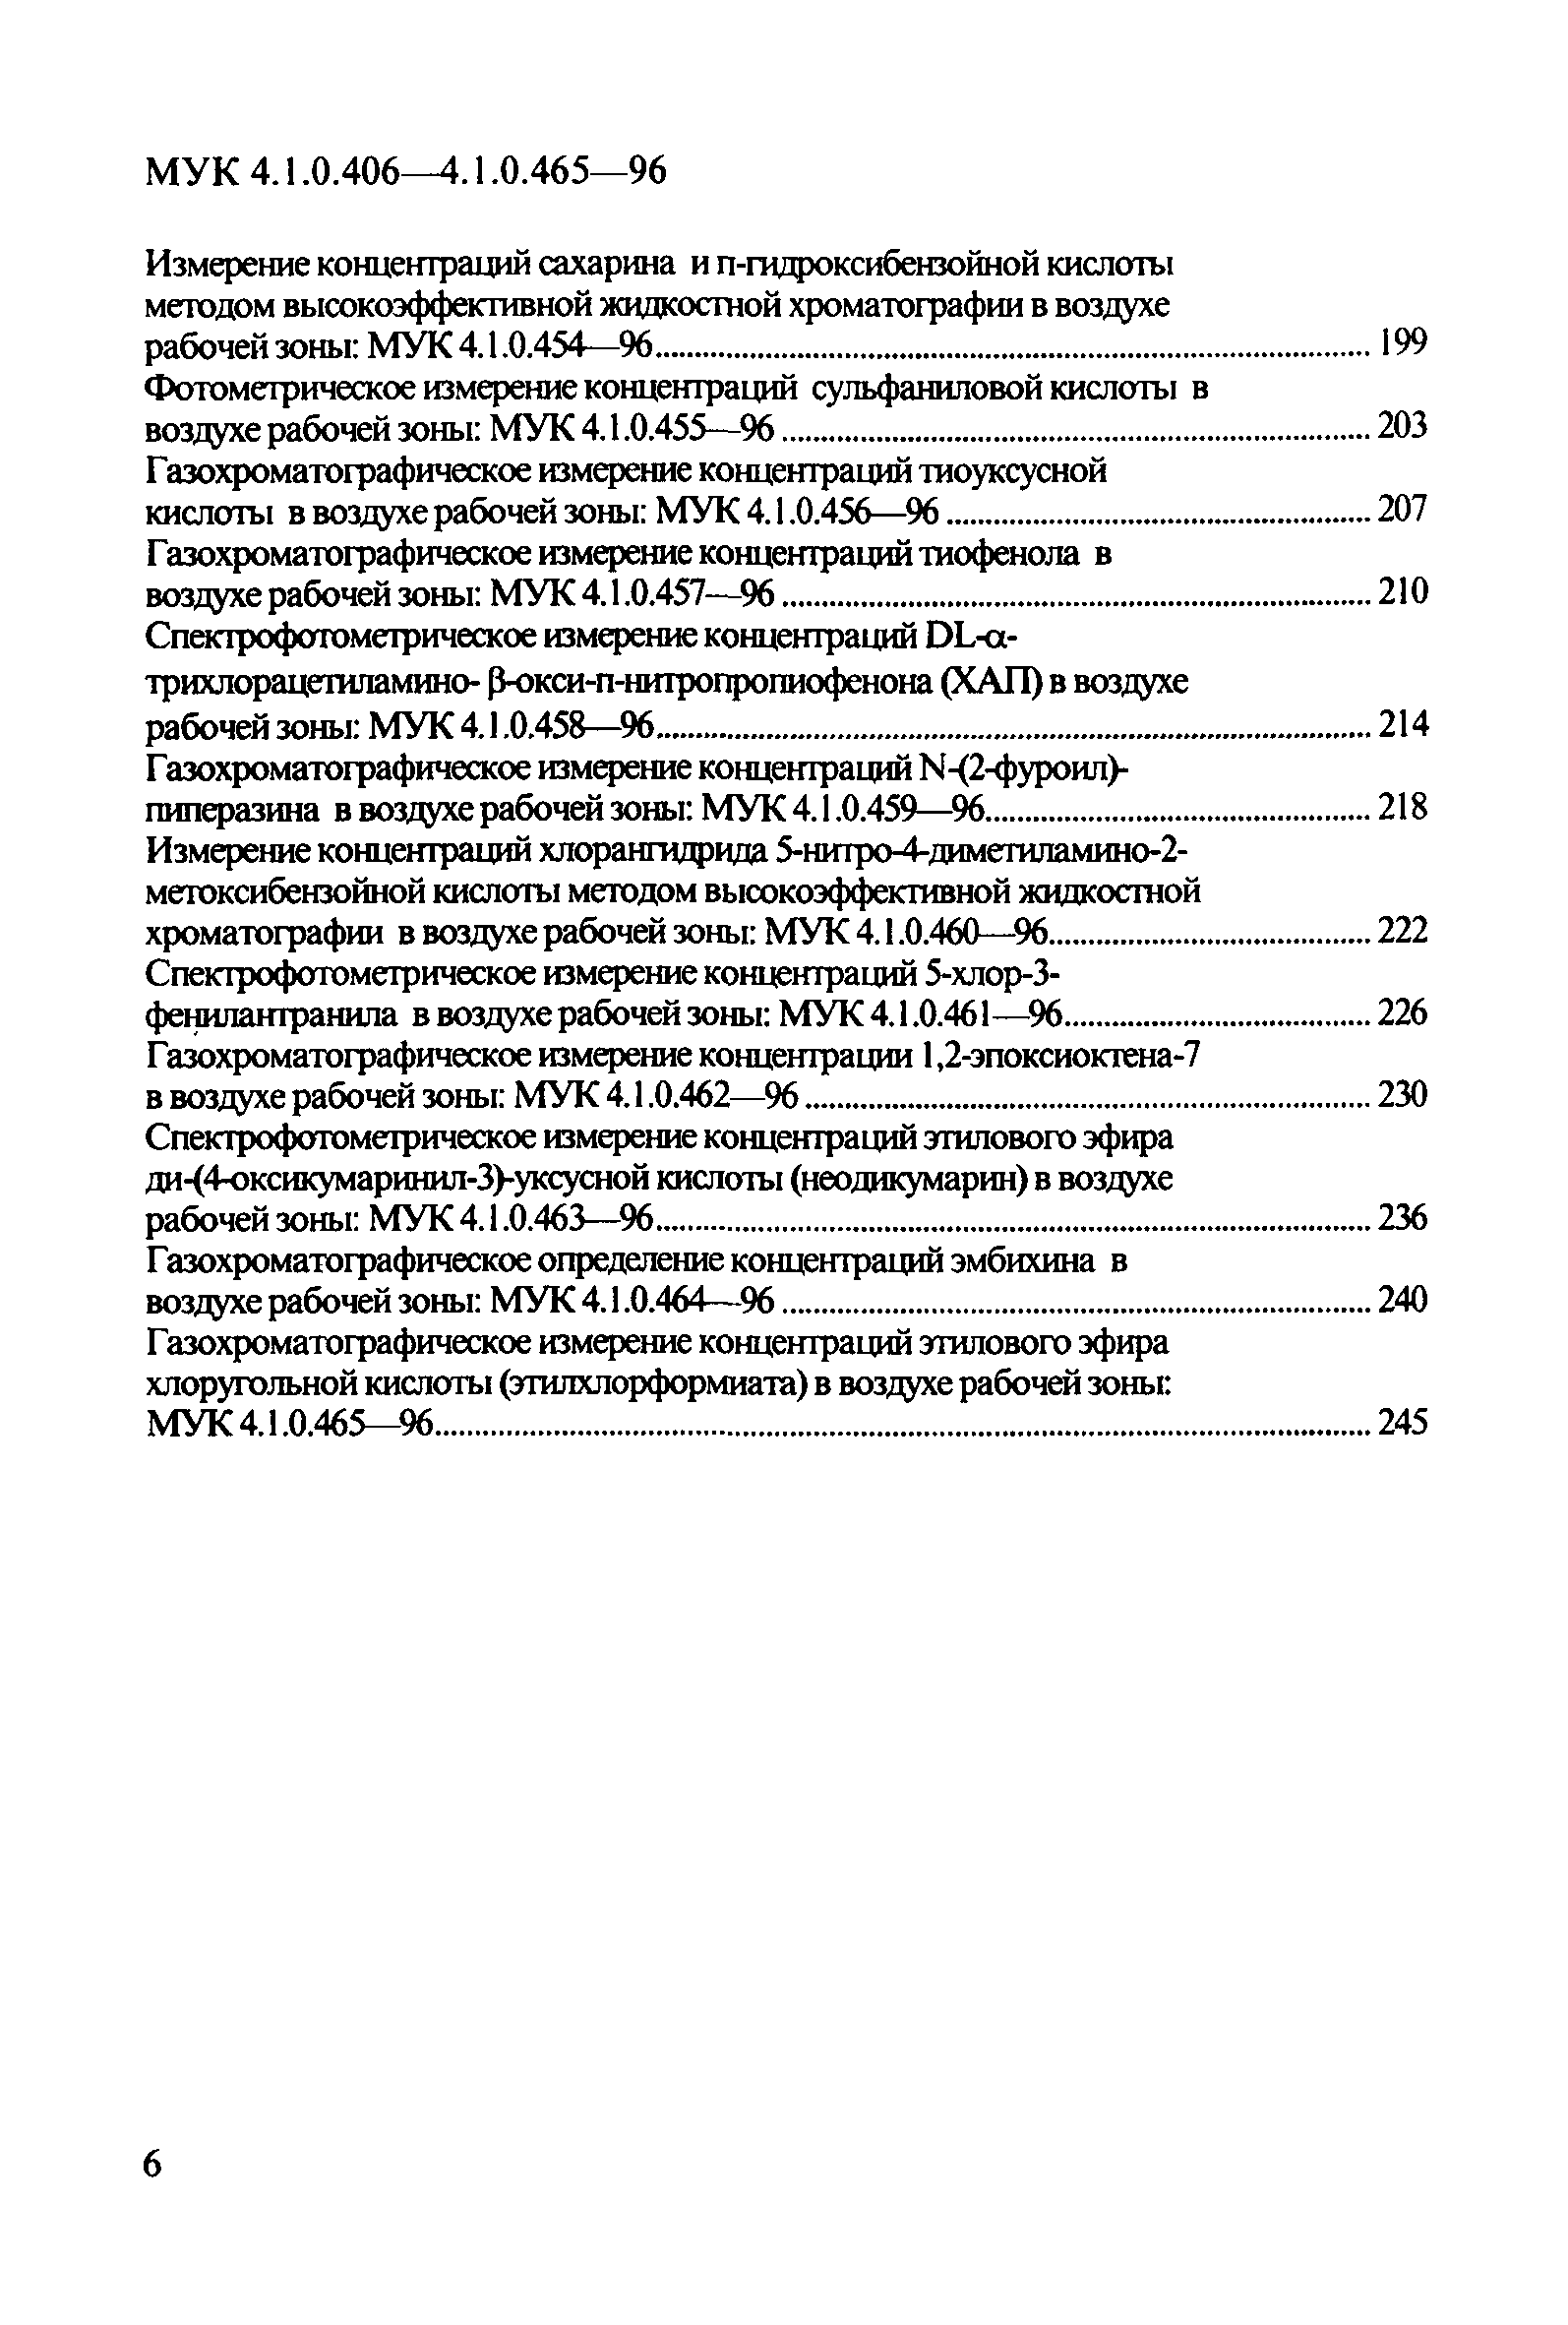 МУК 4.1.0.464-96